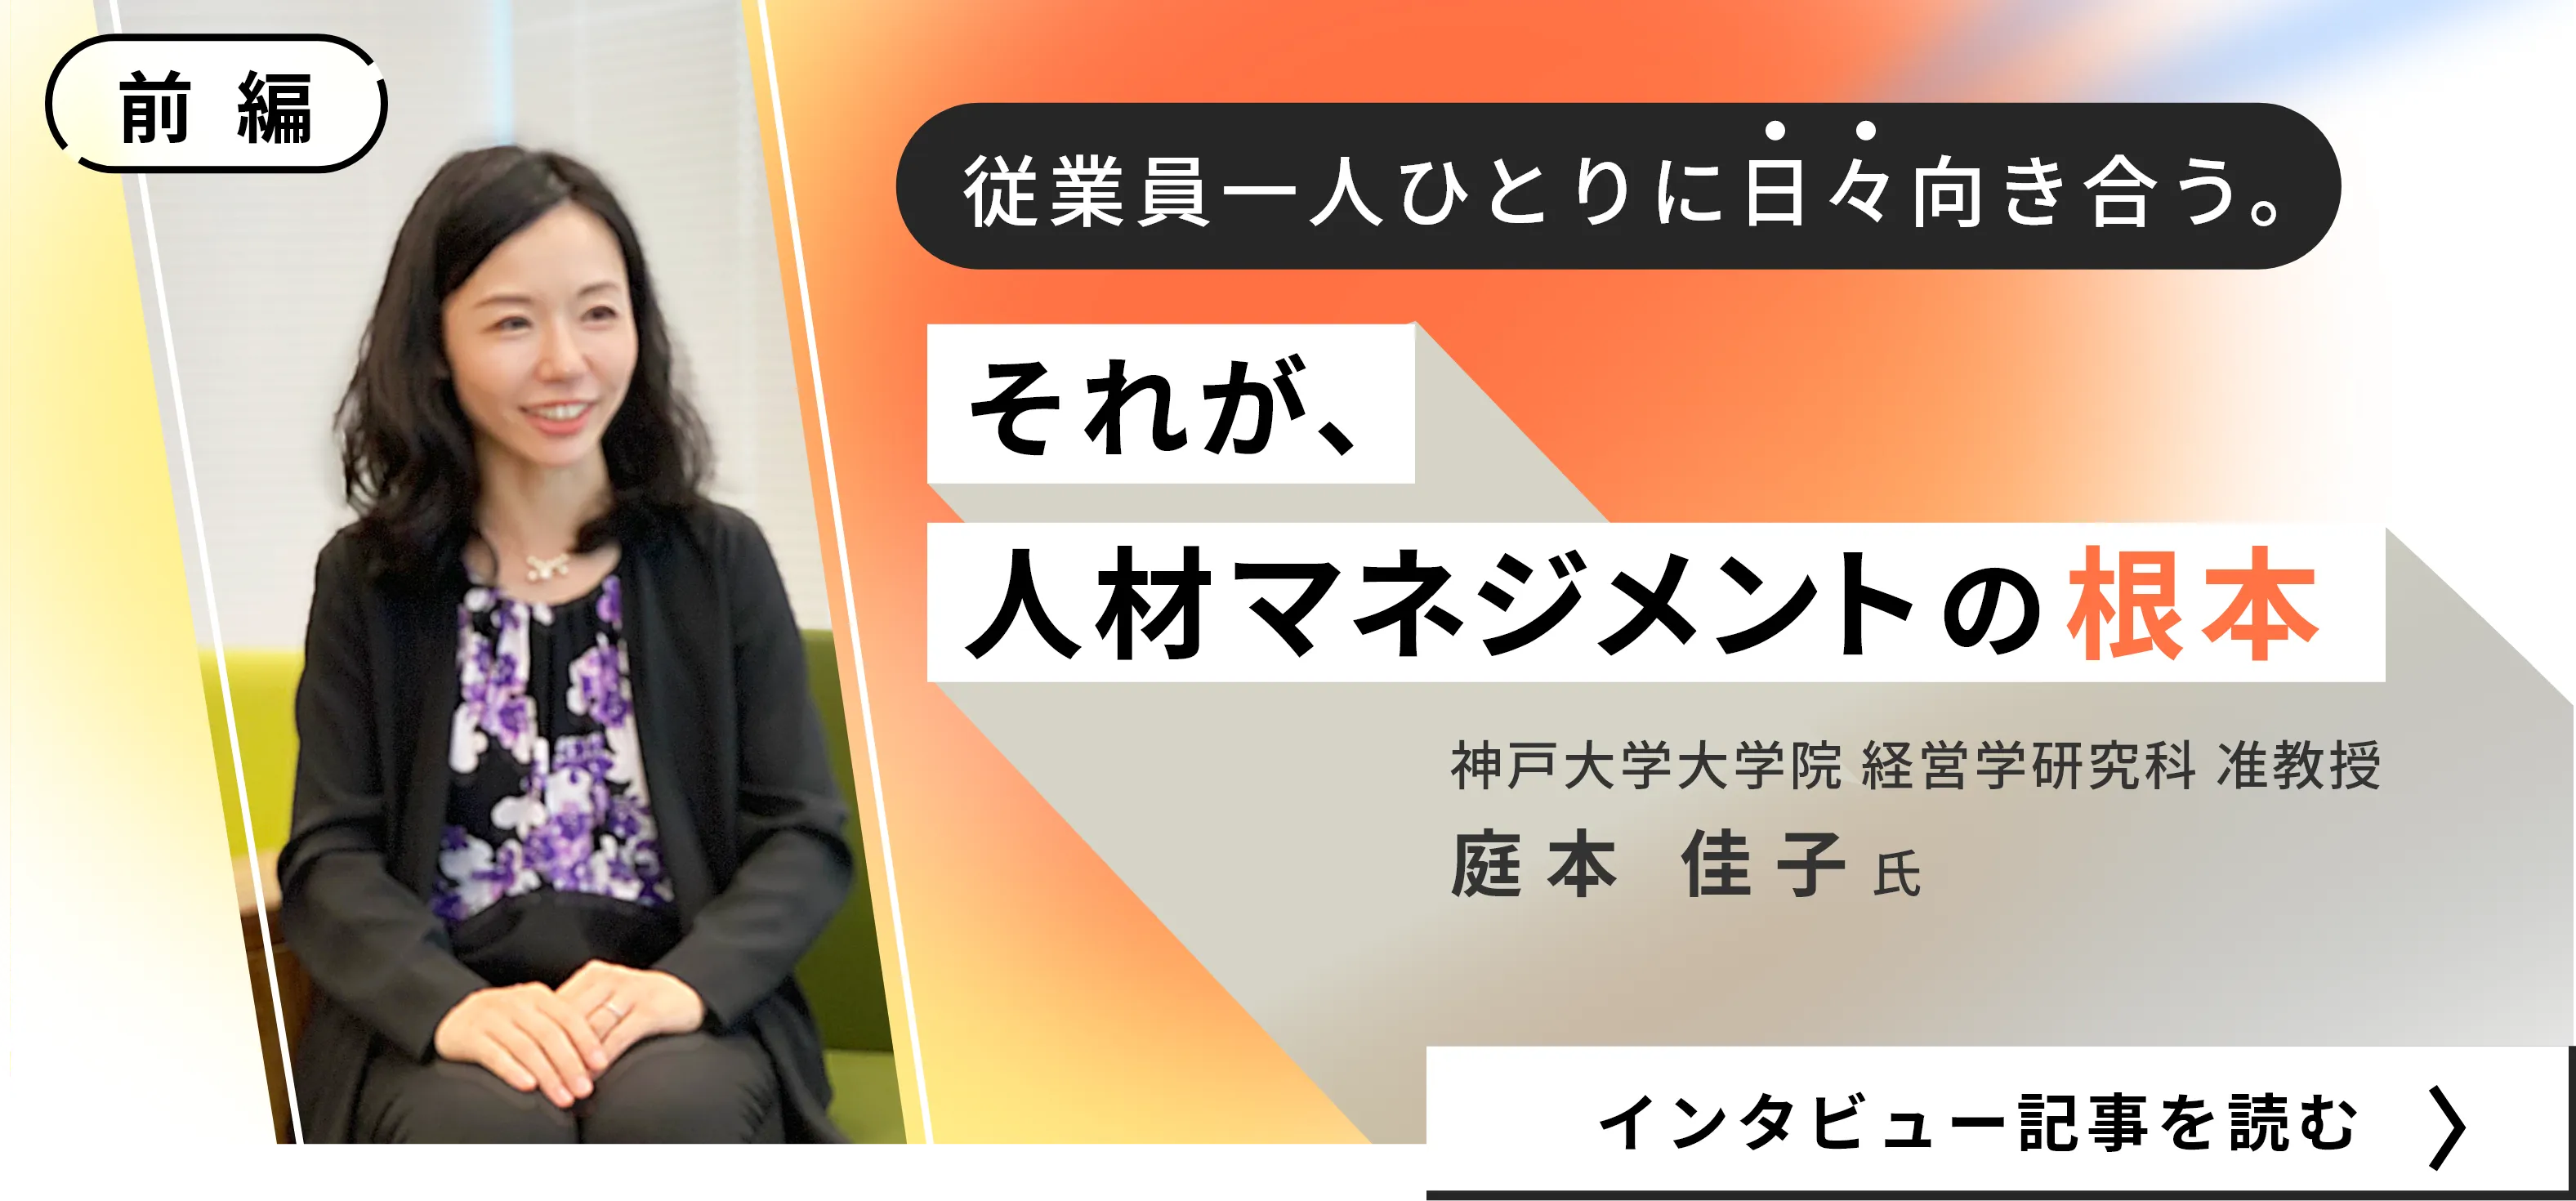 神戸大学大学院 庭本 佳子氏インタビュー記事（前編）/従業員一人ひとりに日々向き合う。それが、人材マネジメントの根本